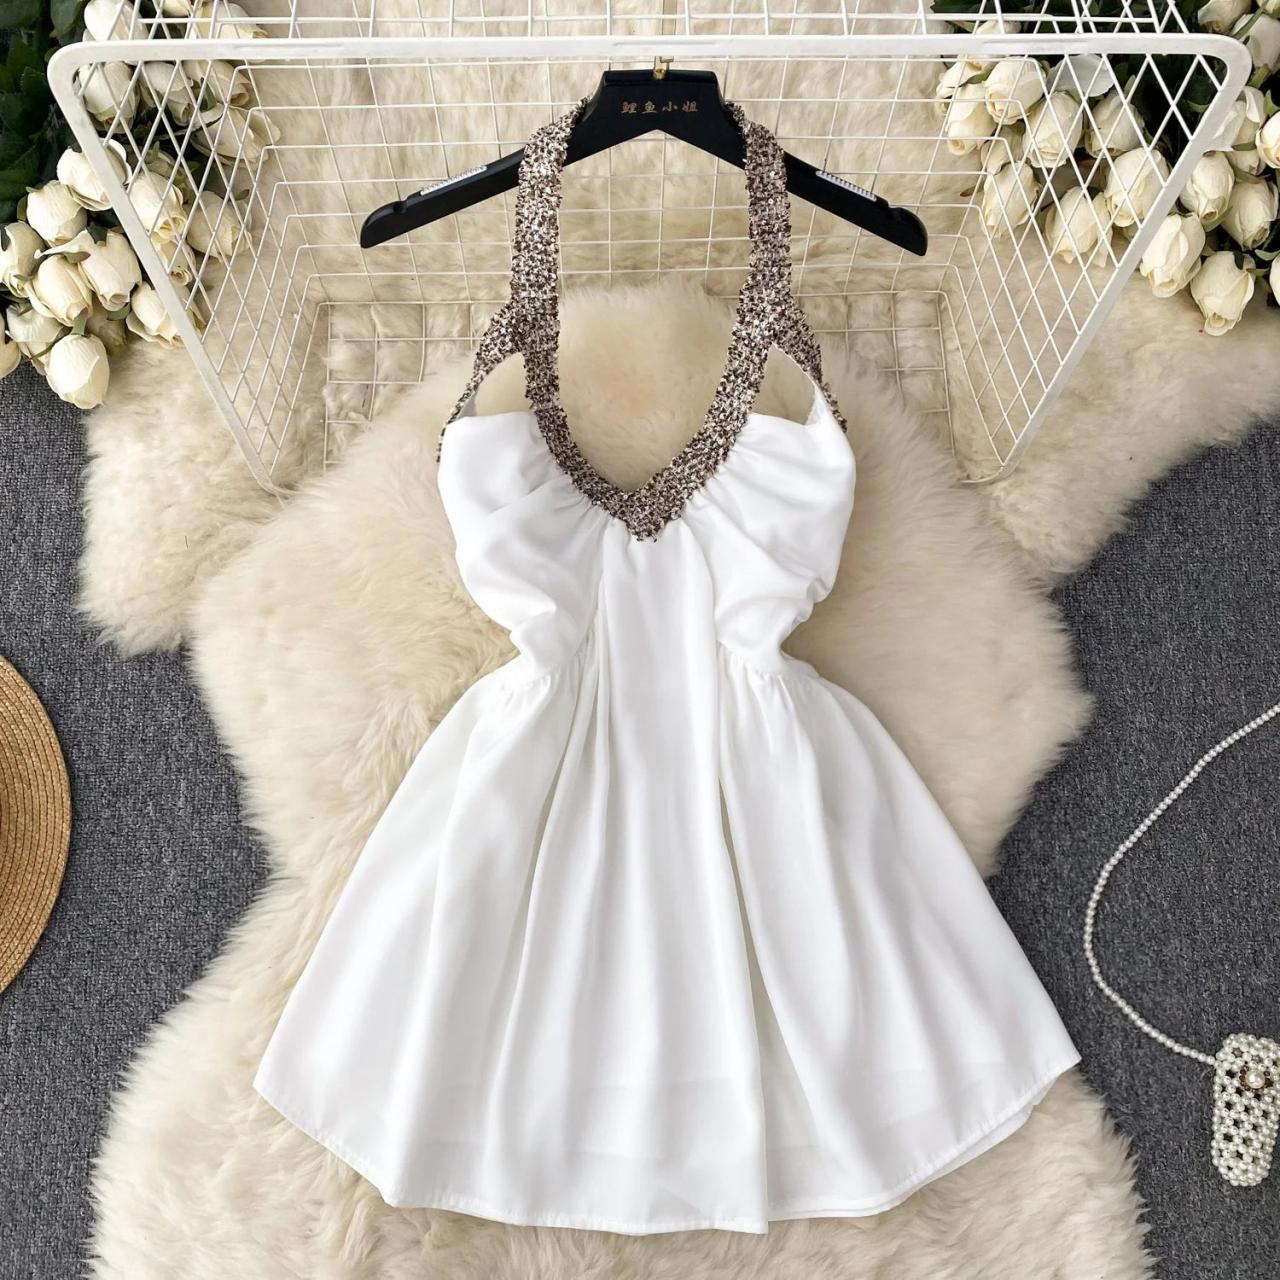 Elegant White Halter Dress With Embellished Neckline